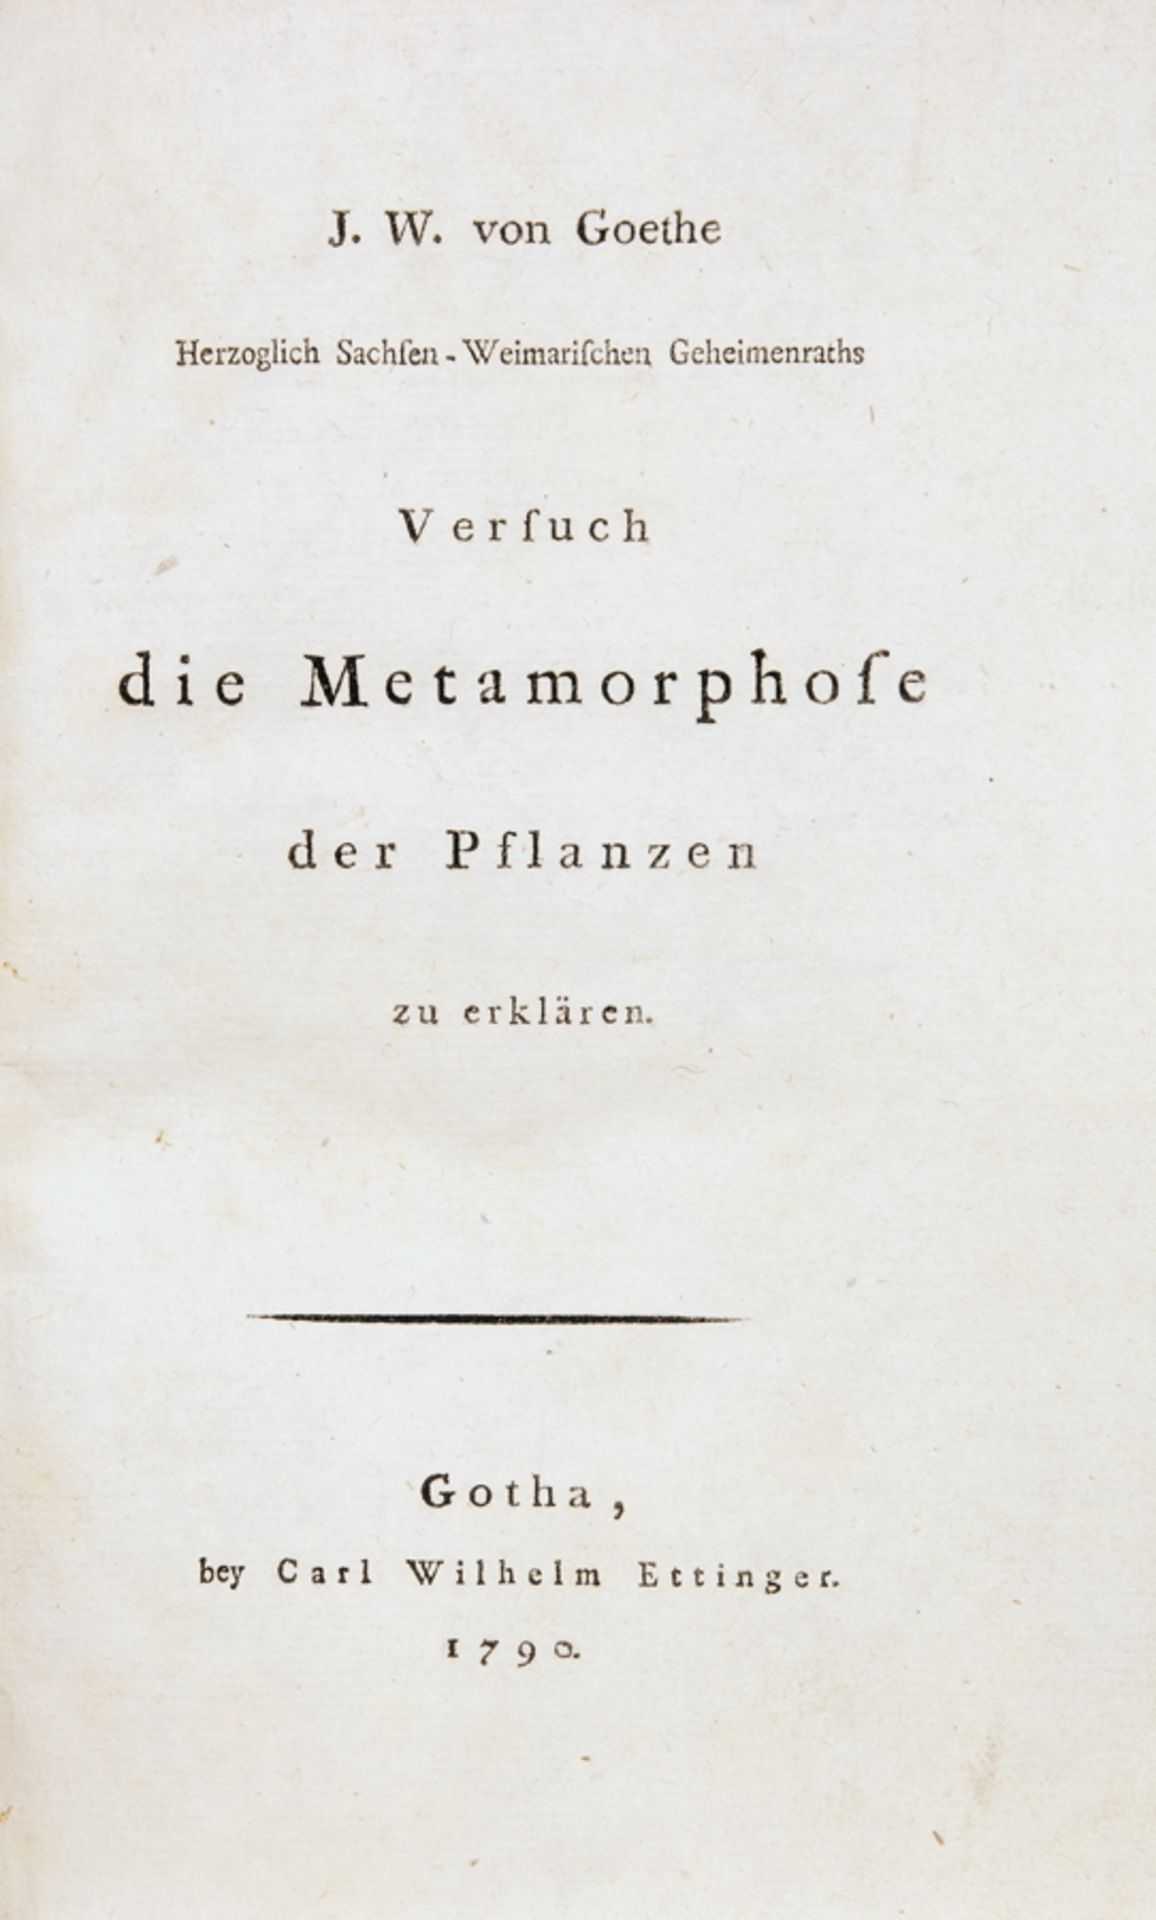 J[ohann] W[olfgang] von Goethe. Versuch die Metamorphose der Pflanzen zu erklären. Gotha, Carl